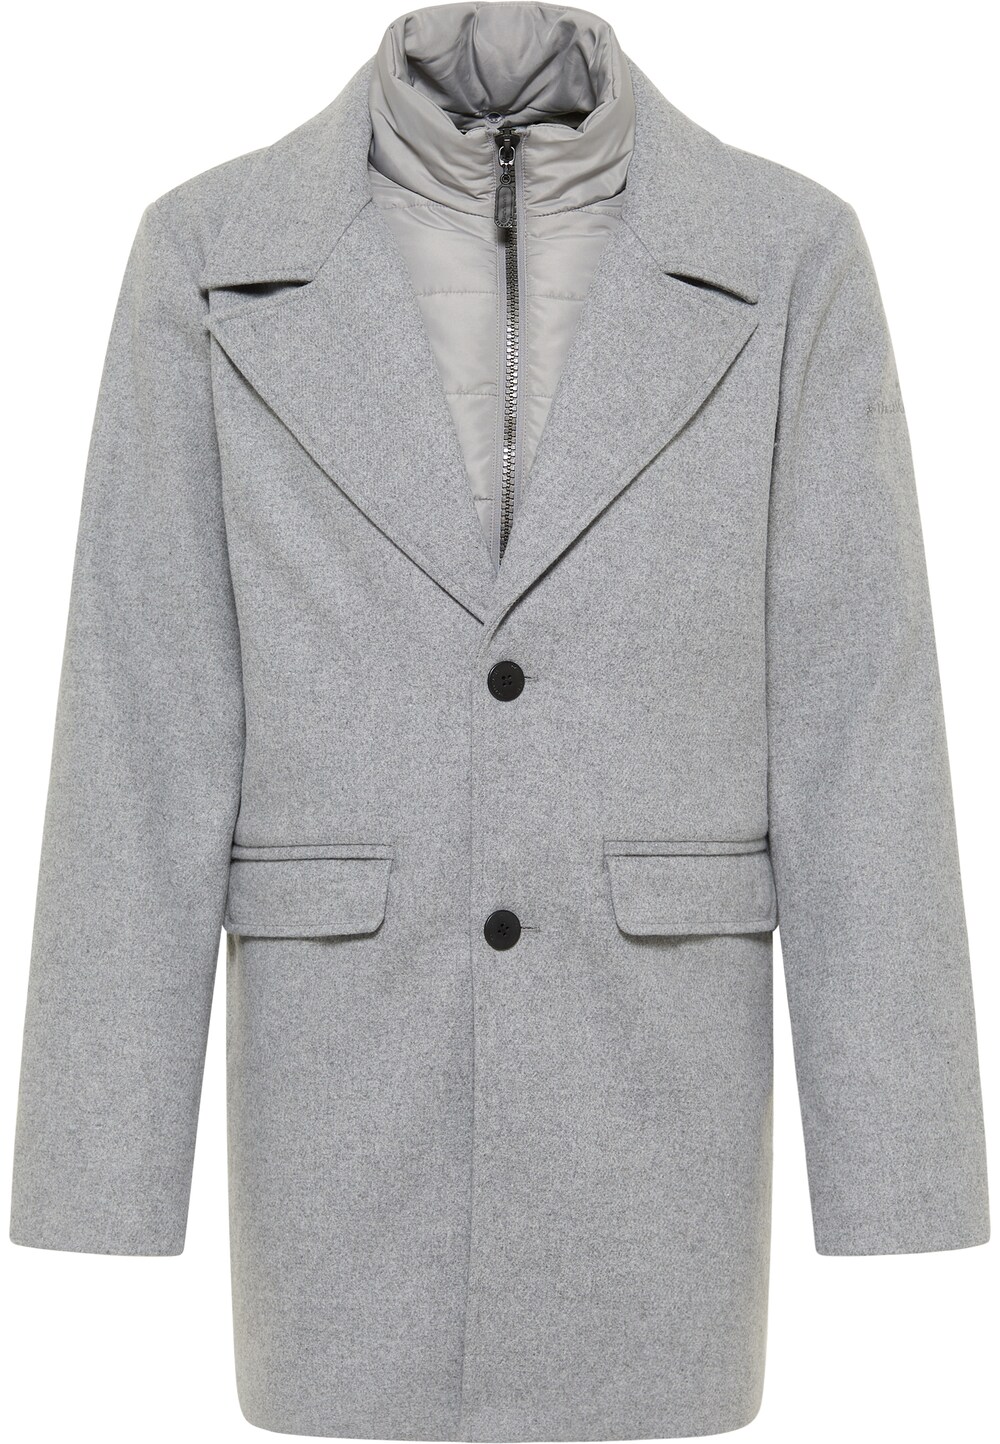 Межсезонное пальто DreiMaster Klassik, пестрый серый